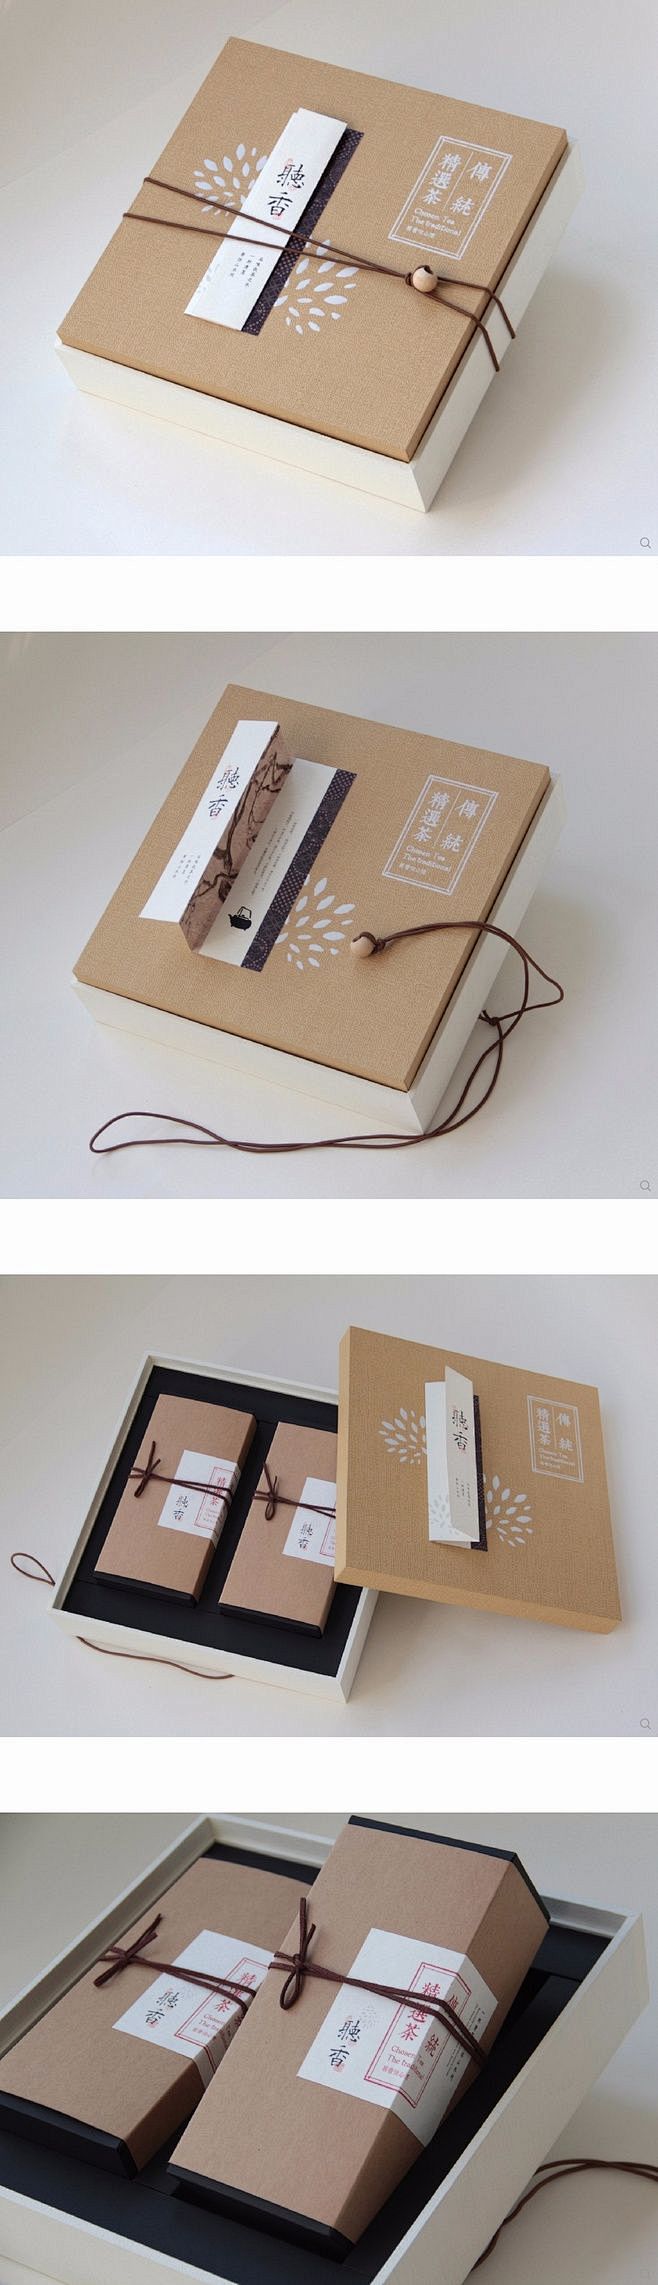 茶叶礼盒纸盒纸箱包装盒纸盒包装盒包装设计